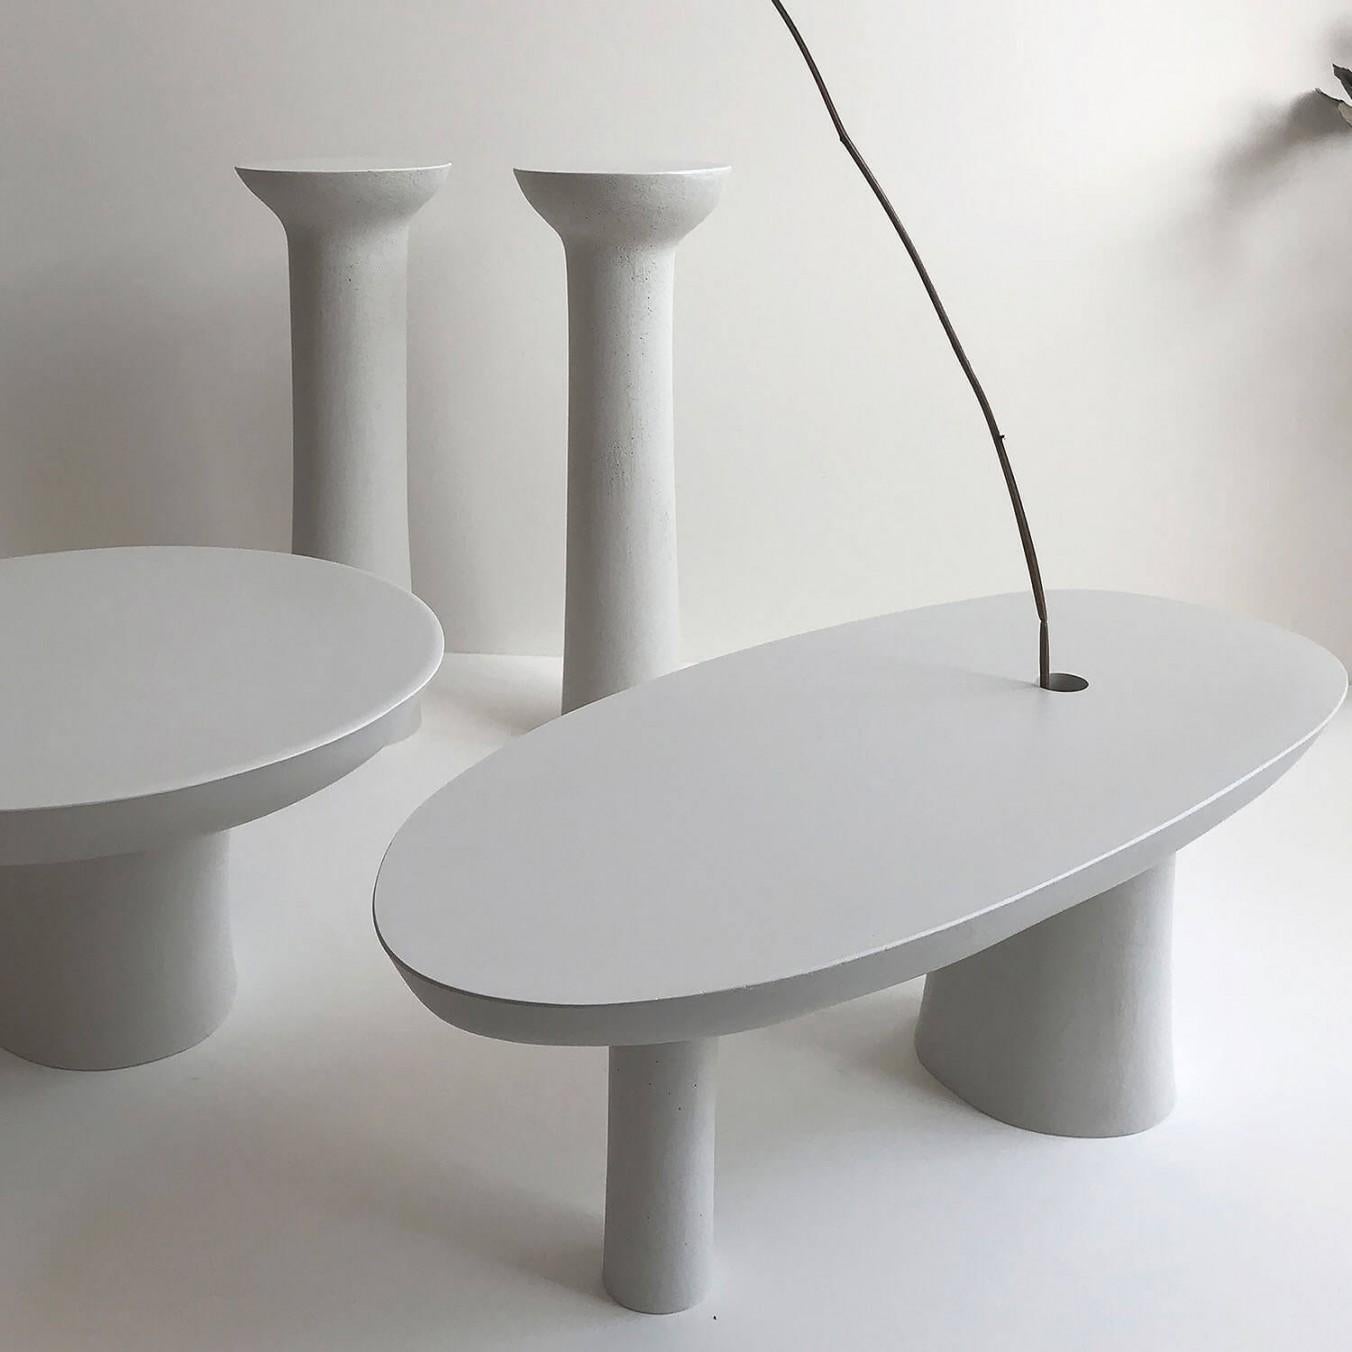 Cast Stone Contemporary White Jesmonite Vase, Stem Vase by Malgorzata Bany For Sale